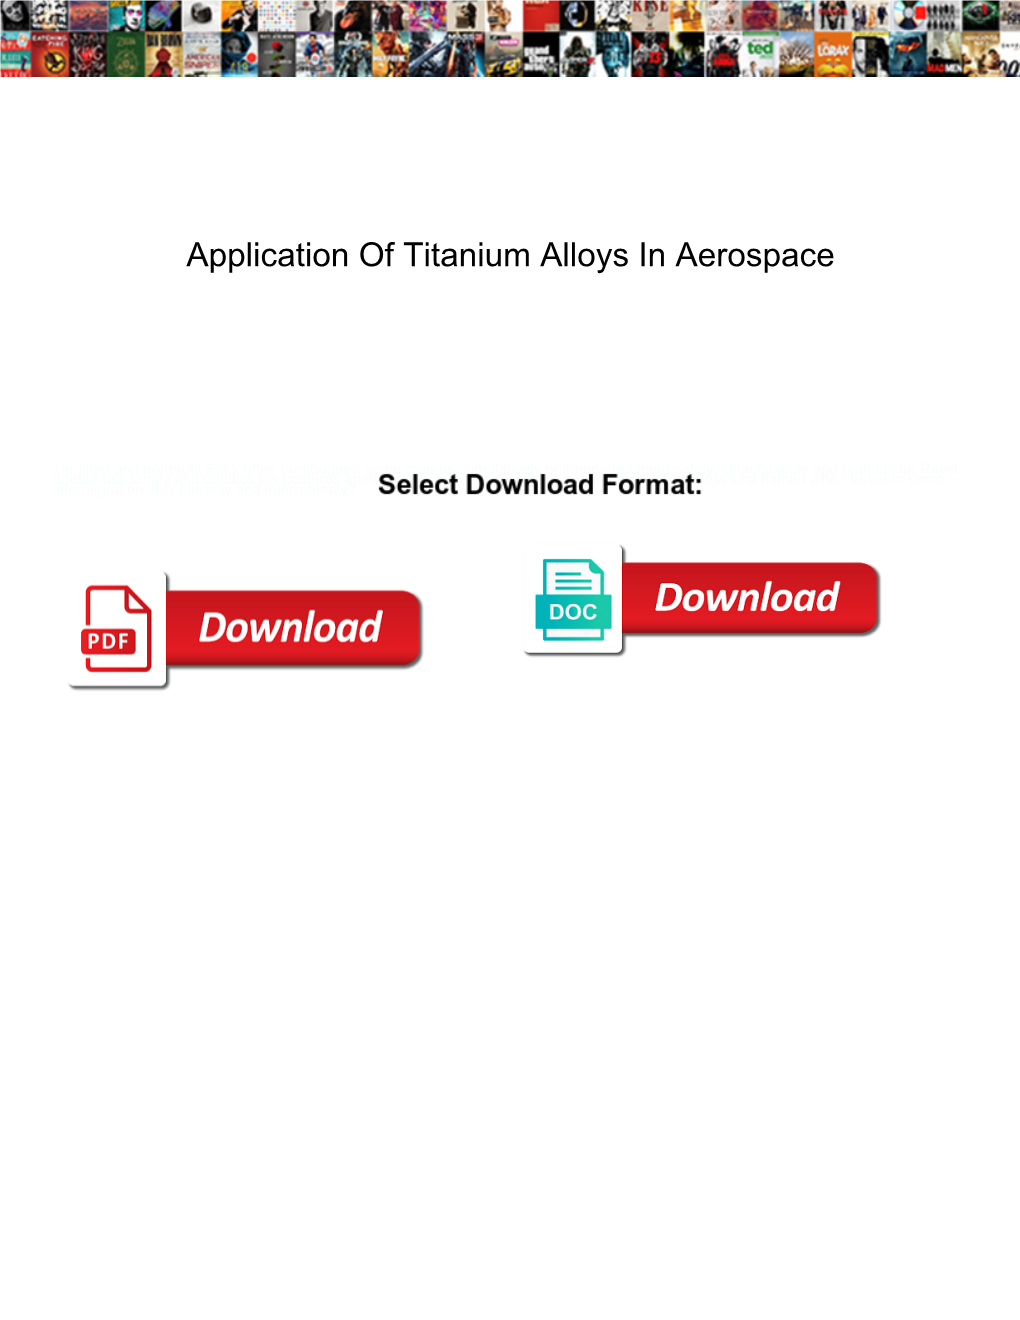 Application of Titanium Alloys in Aerospace